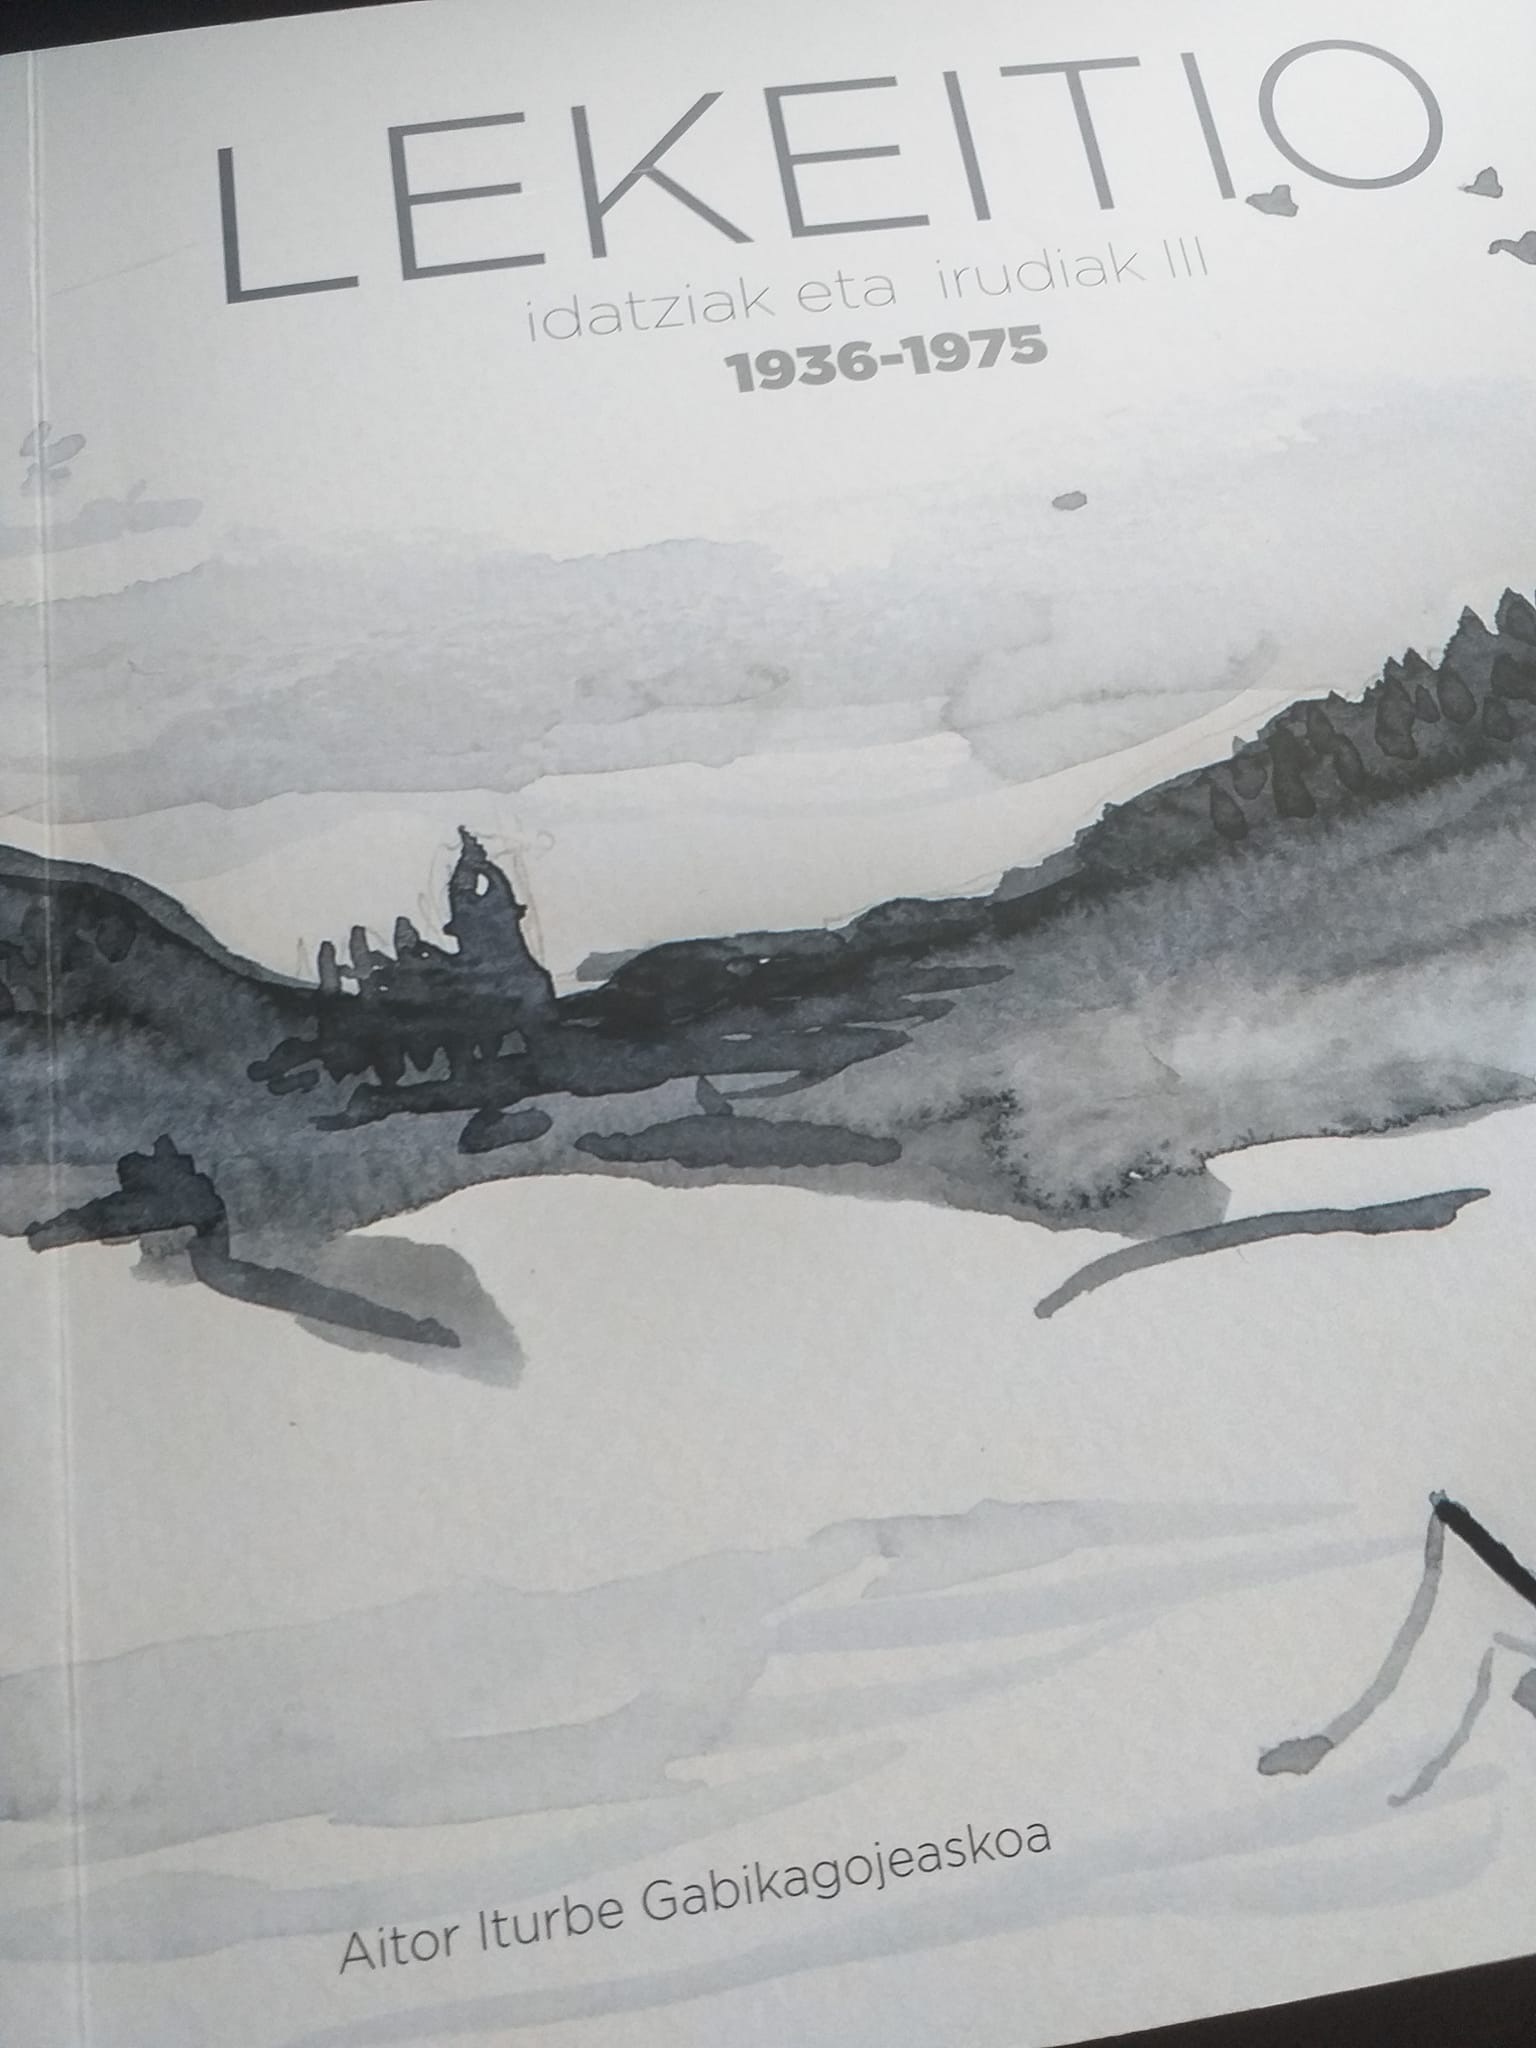 Lekeitio. Idatziak eta irudiak III. 1936-1975. (Paperback, euskara language, Lekeitioko Udala)